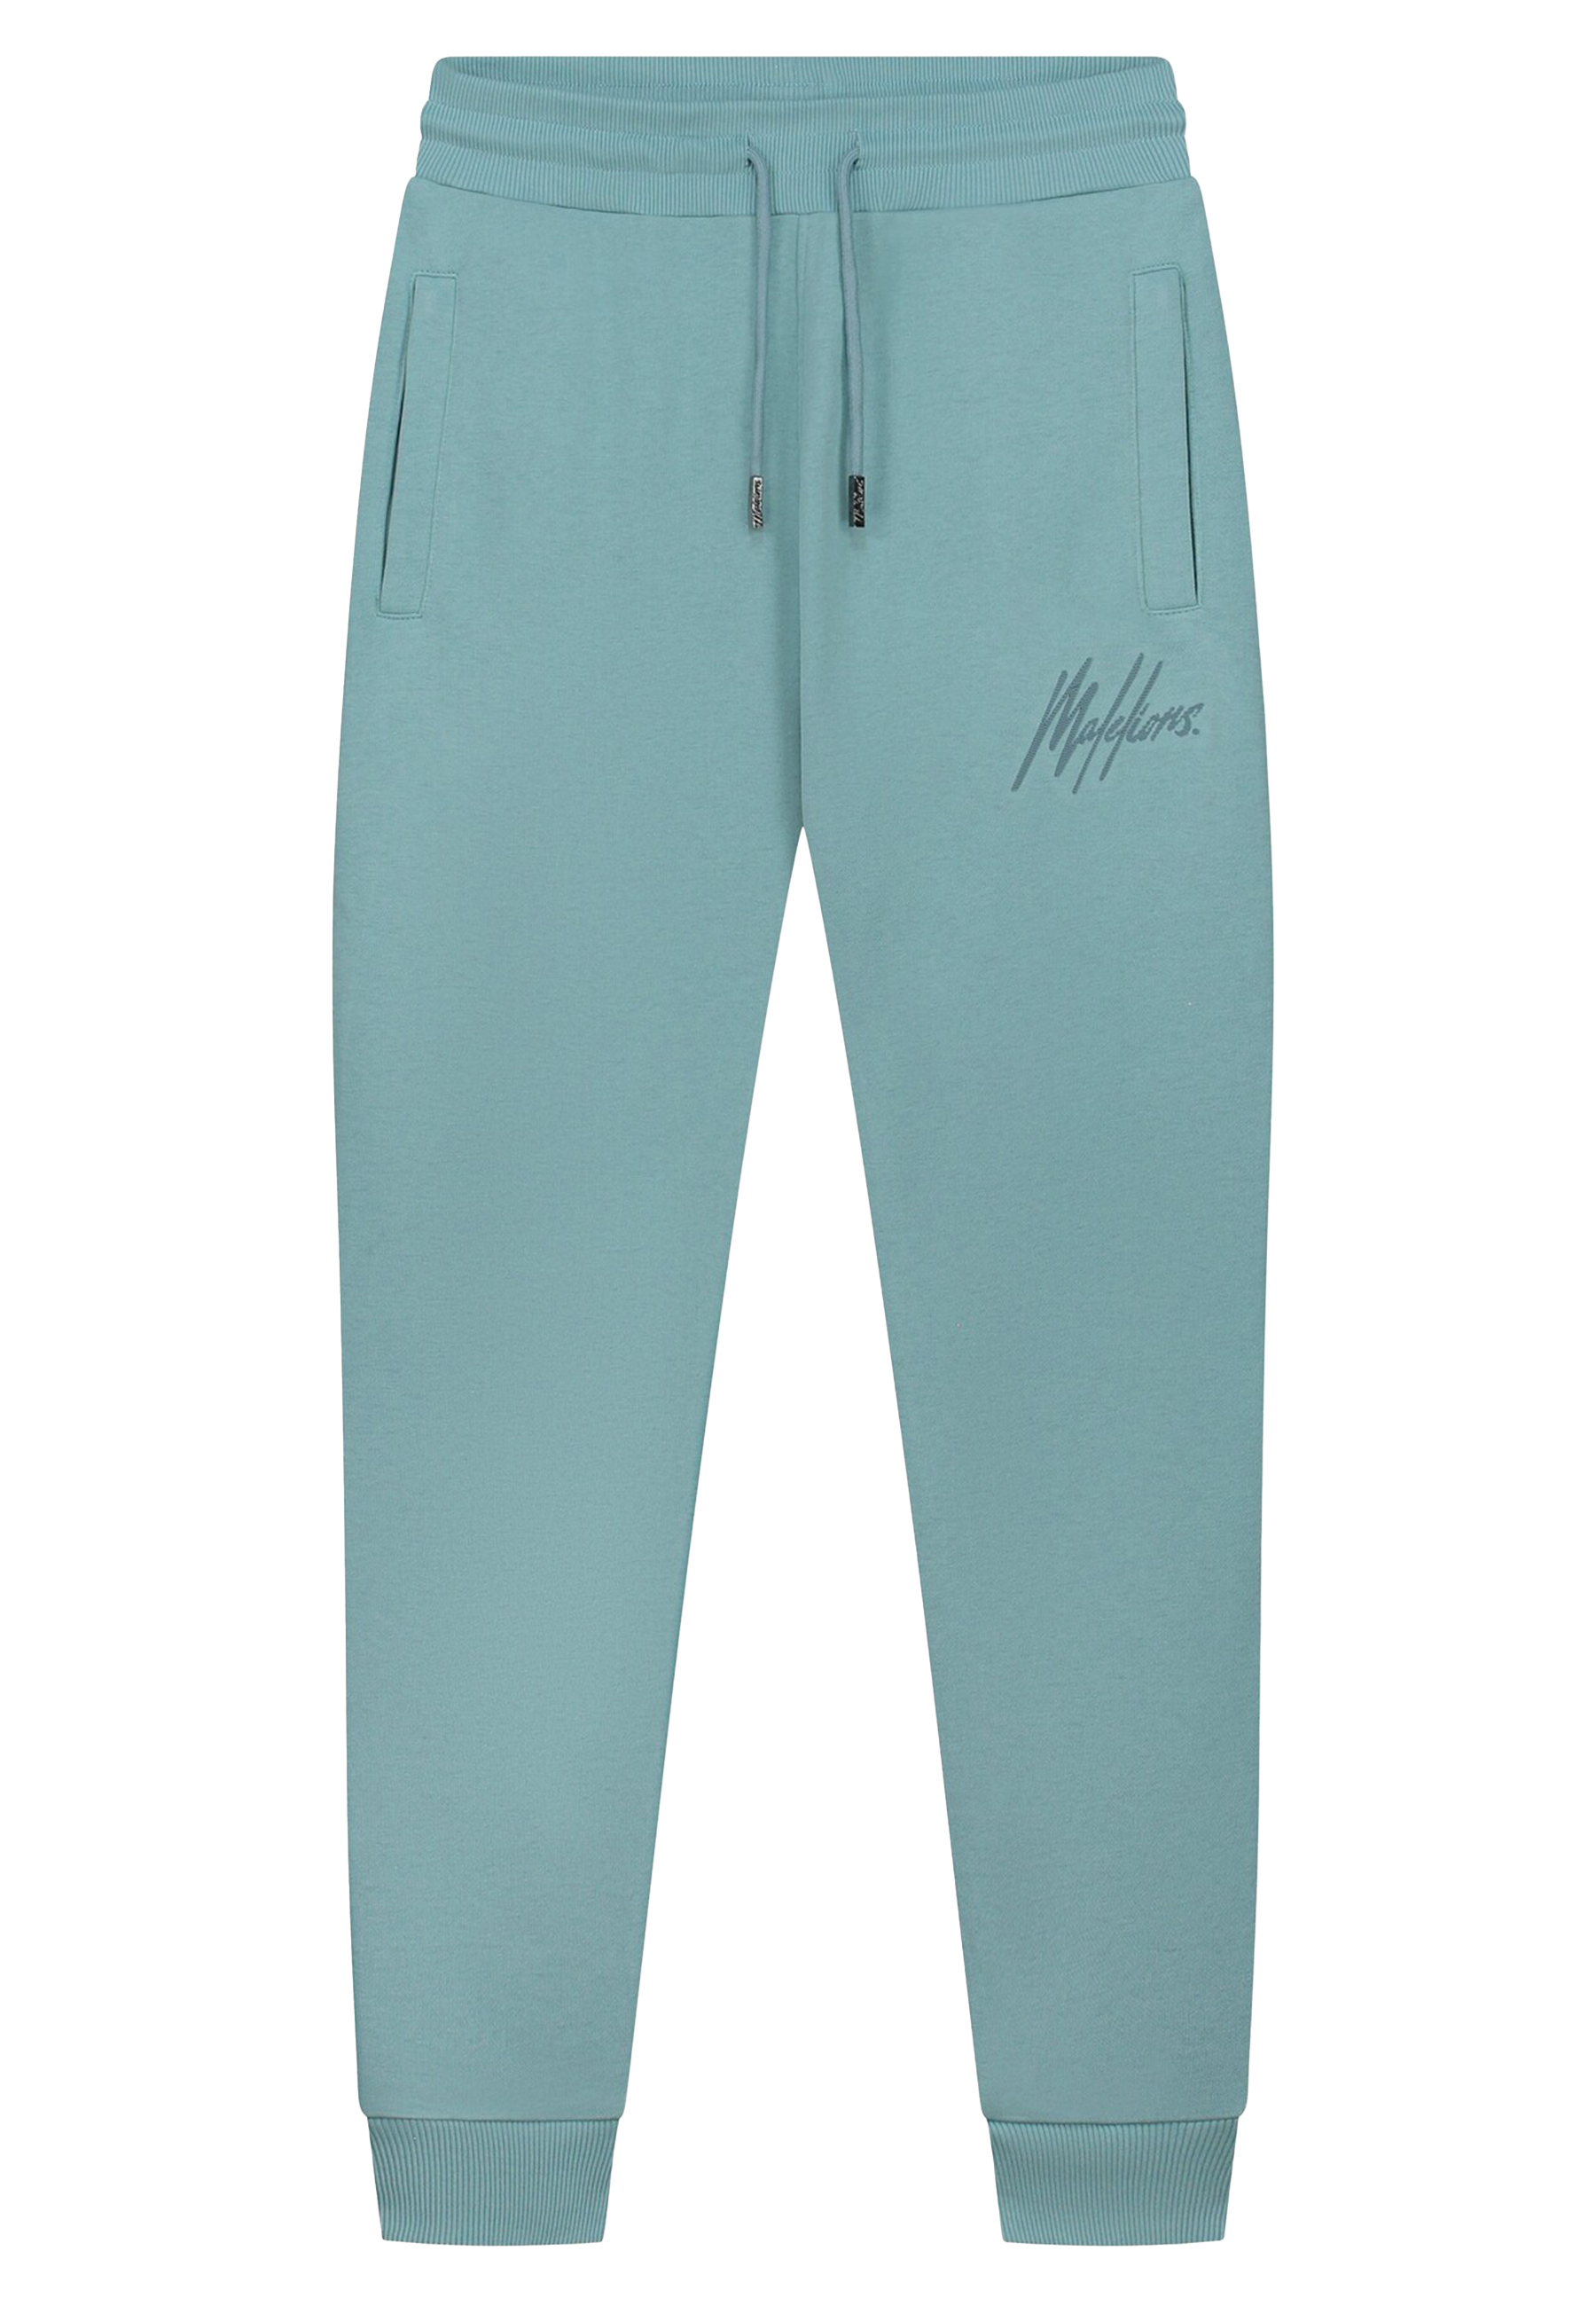 Malelions Broek Blauw Katoen maat XL Striped signature joggings broeken blauw